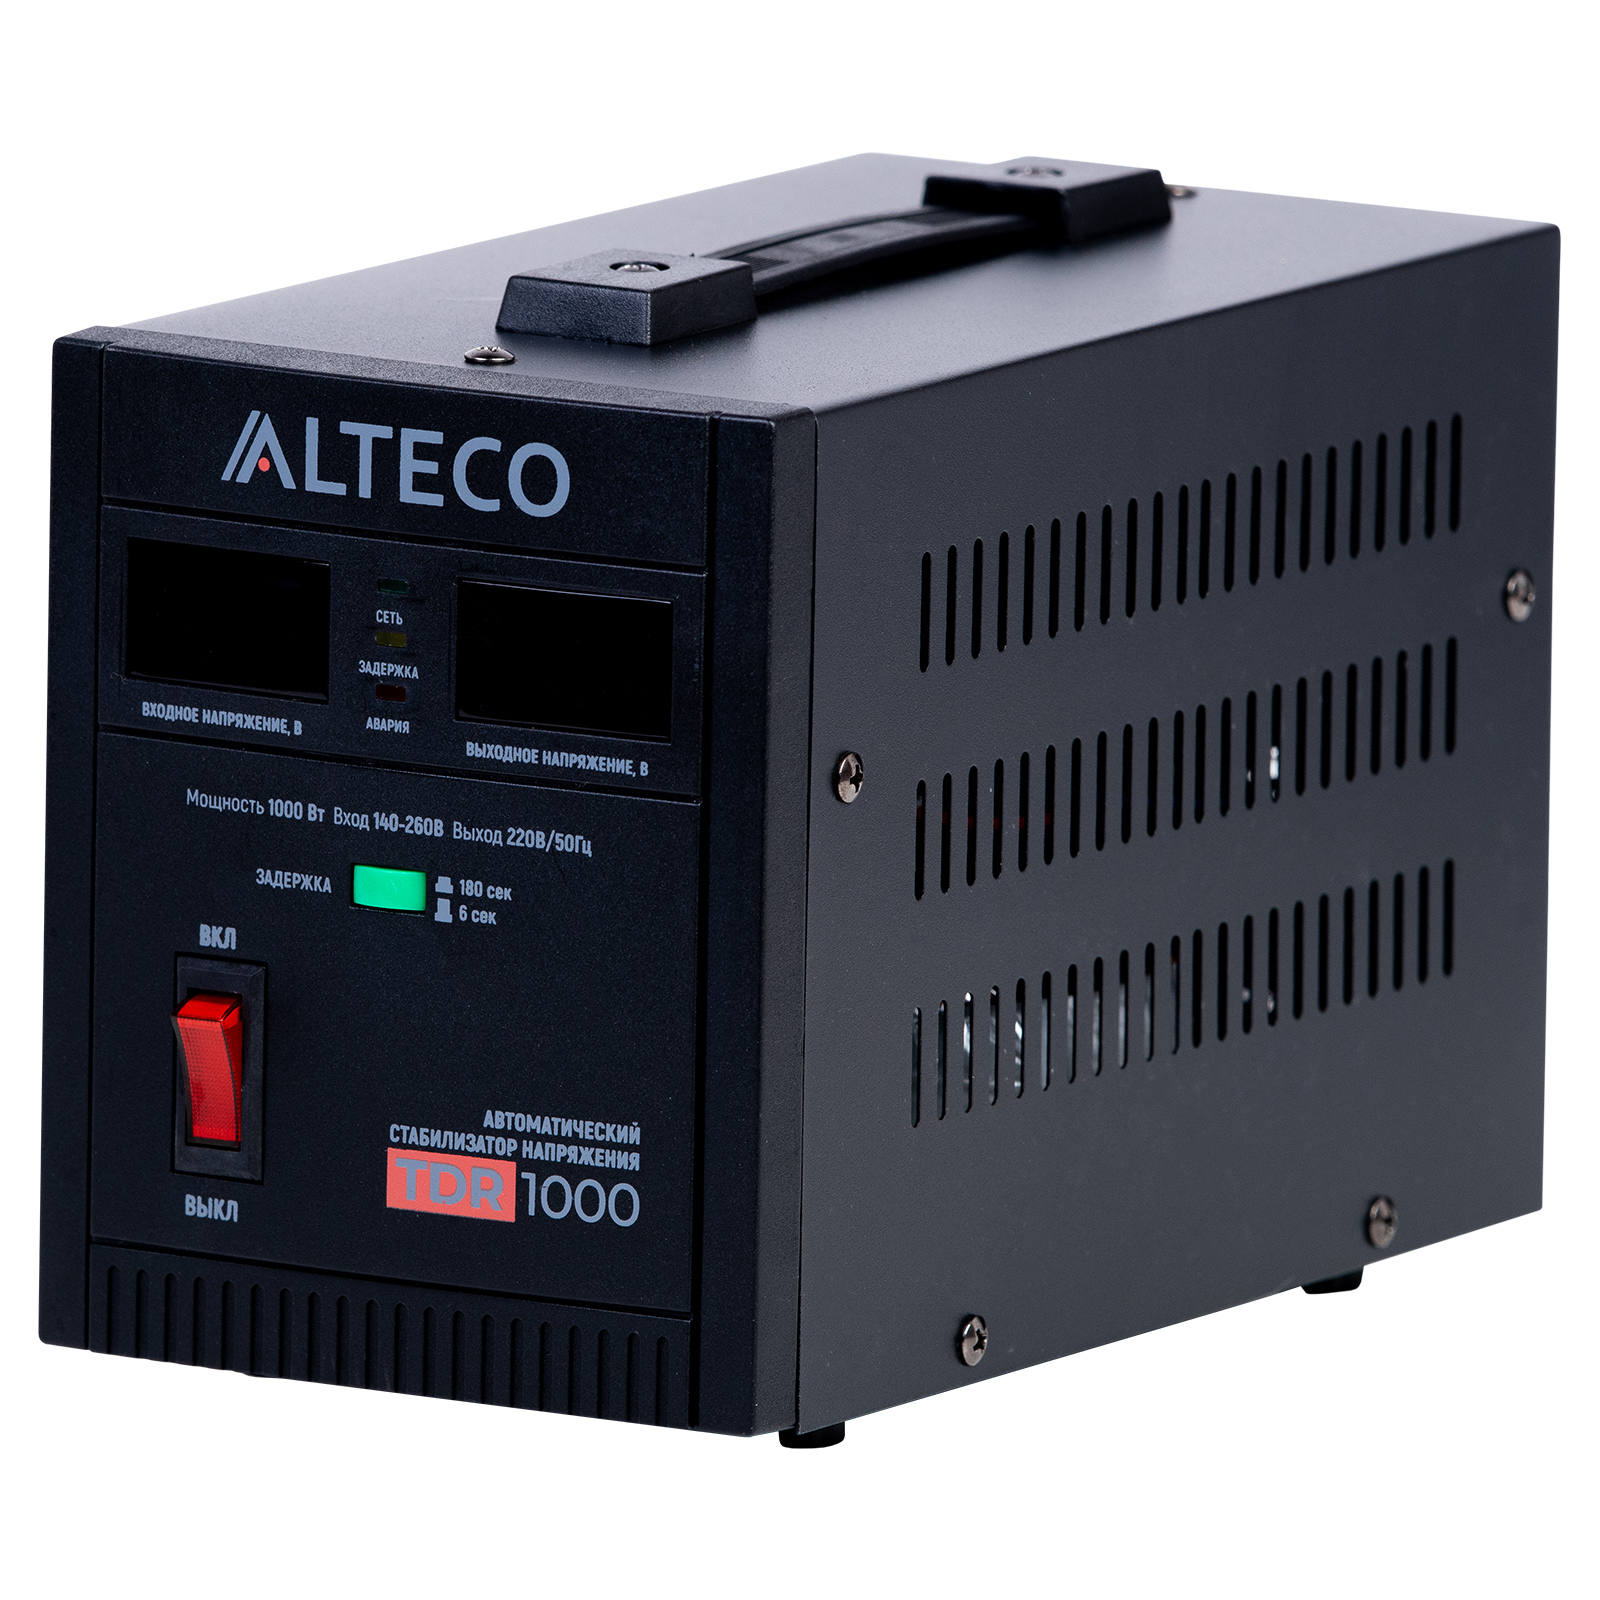 Стабилизатор напряжения Alteco TDR 1000, 1000VA, 1кВт, EURO, черный (49089)